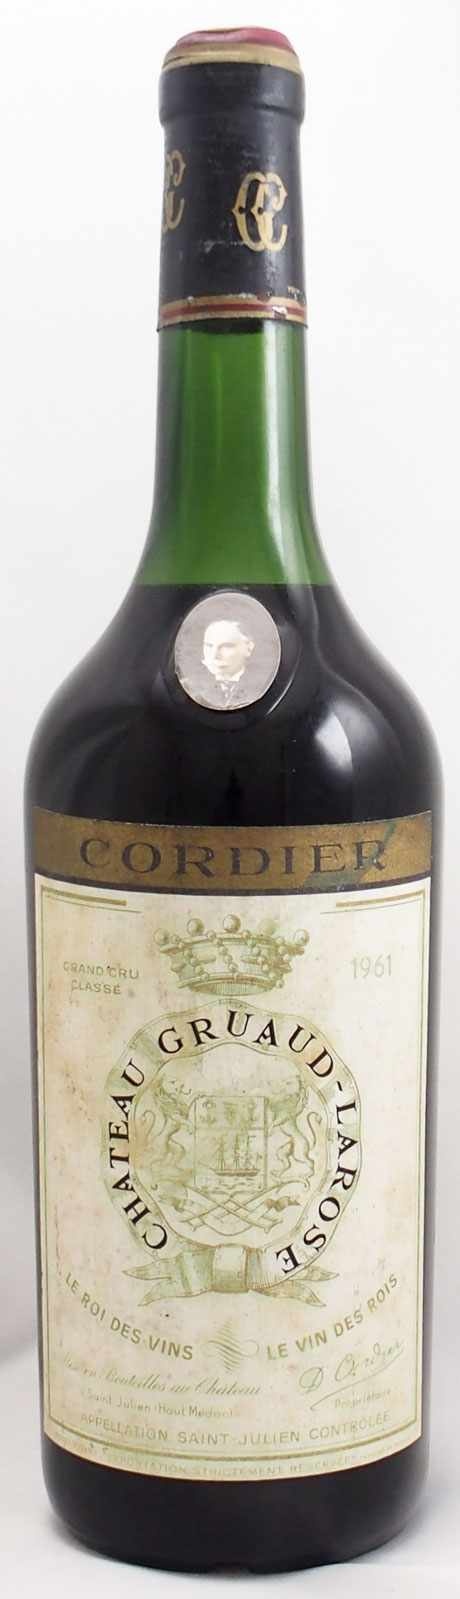 ボルドー ワイン グレート ヴィンテージ シャトー グリュオ ラローズ1961年産地フランス